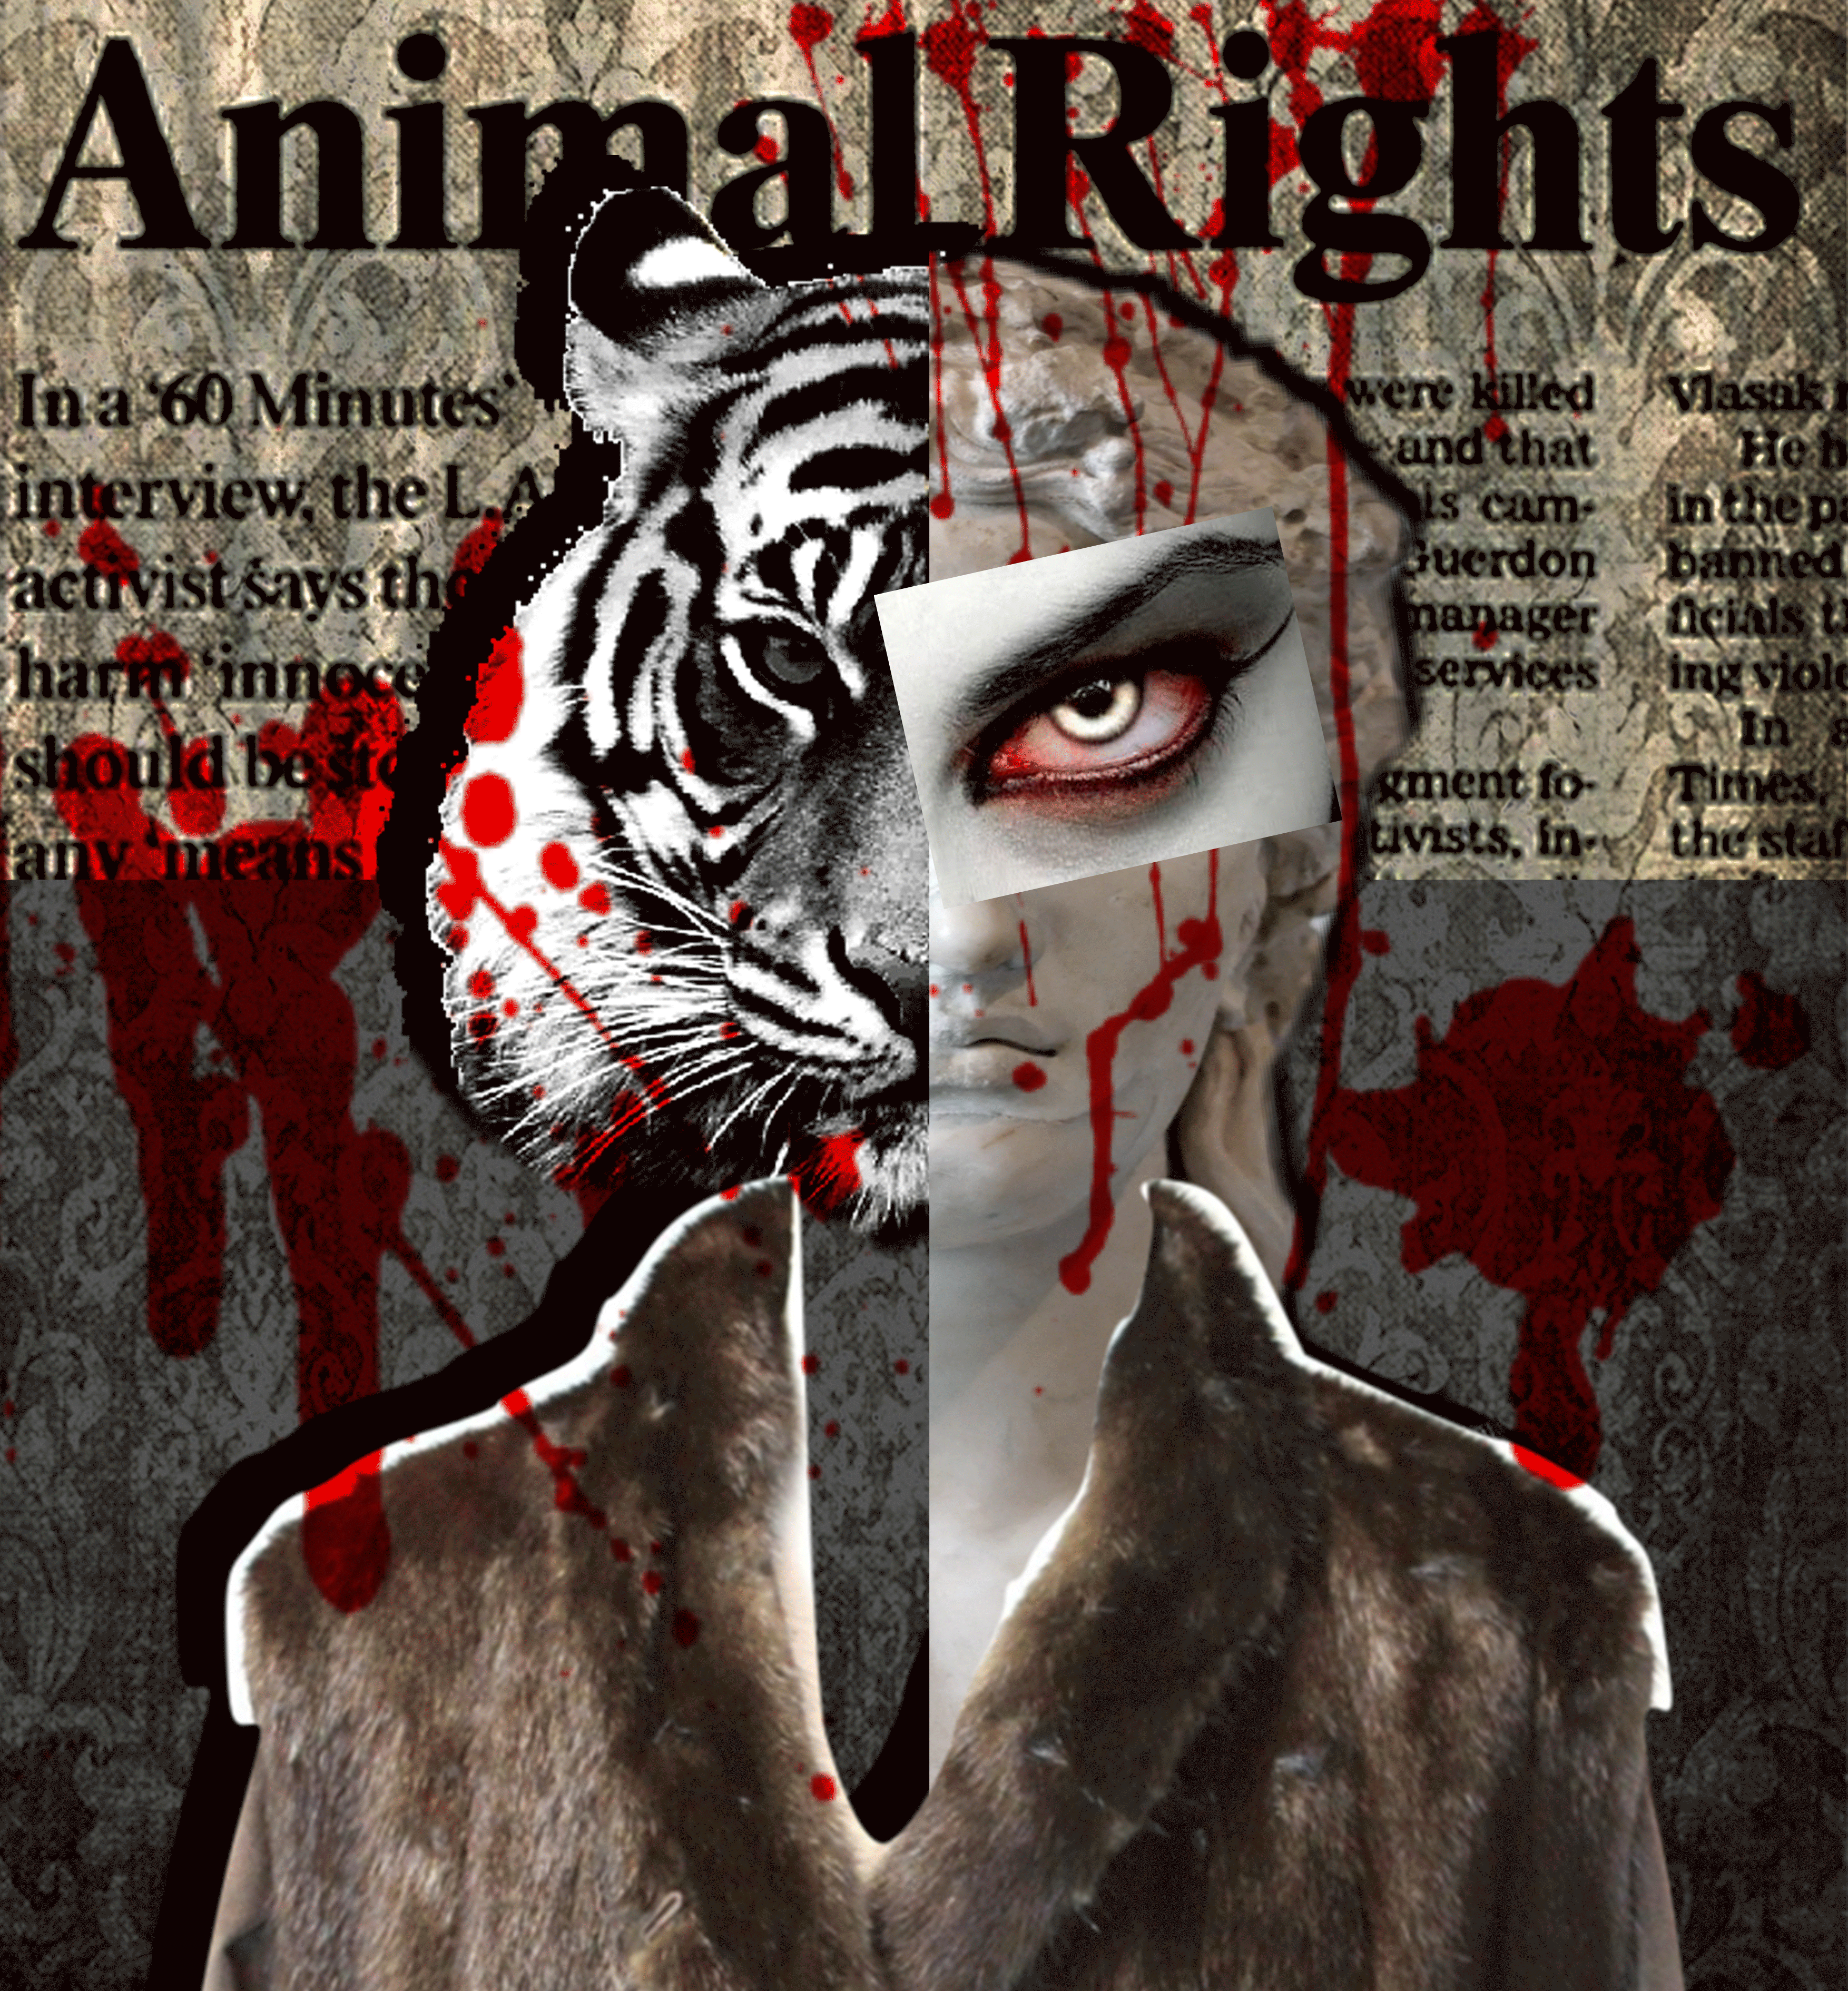 ArtStation - Animal Rights